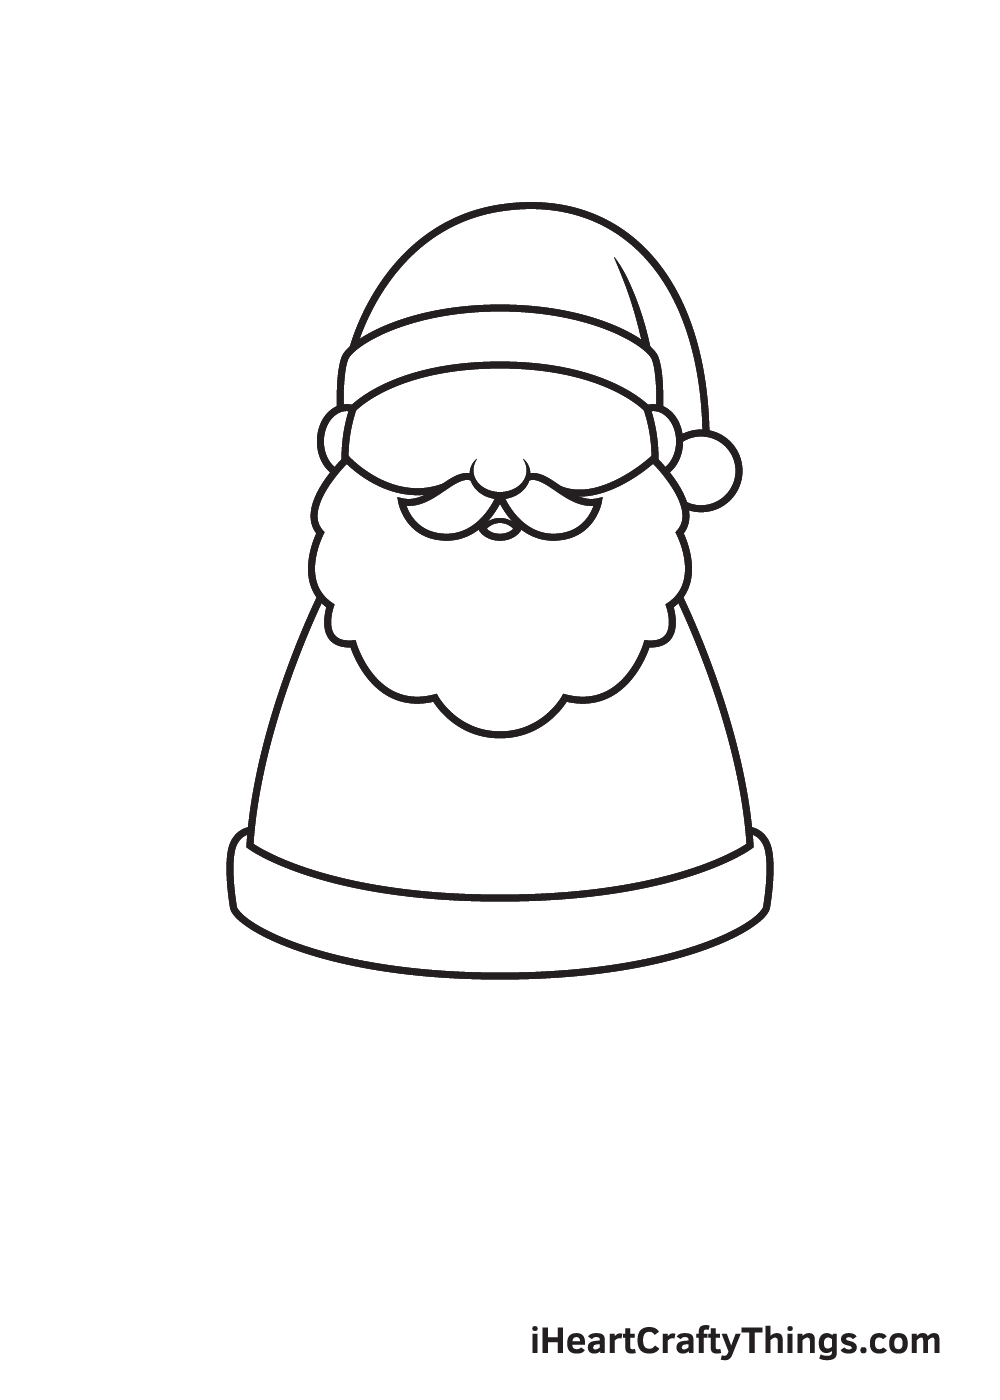 Santa Claus Drawing – Step 5